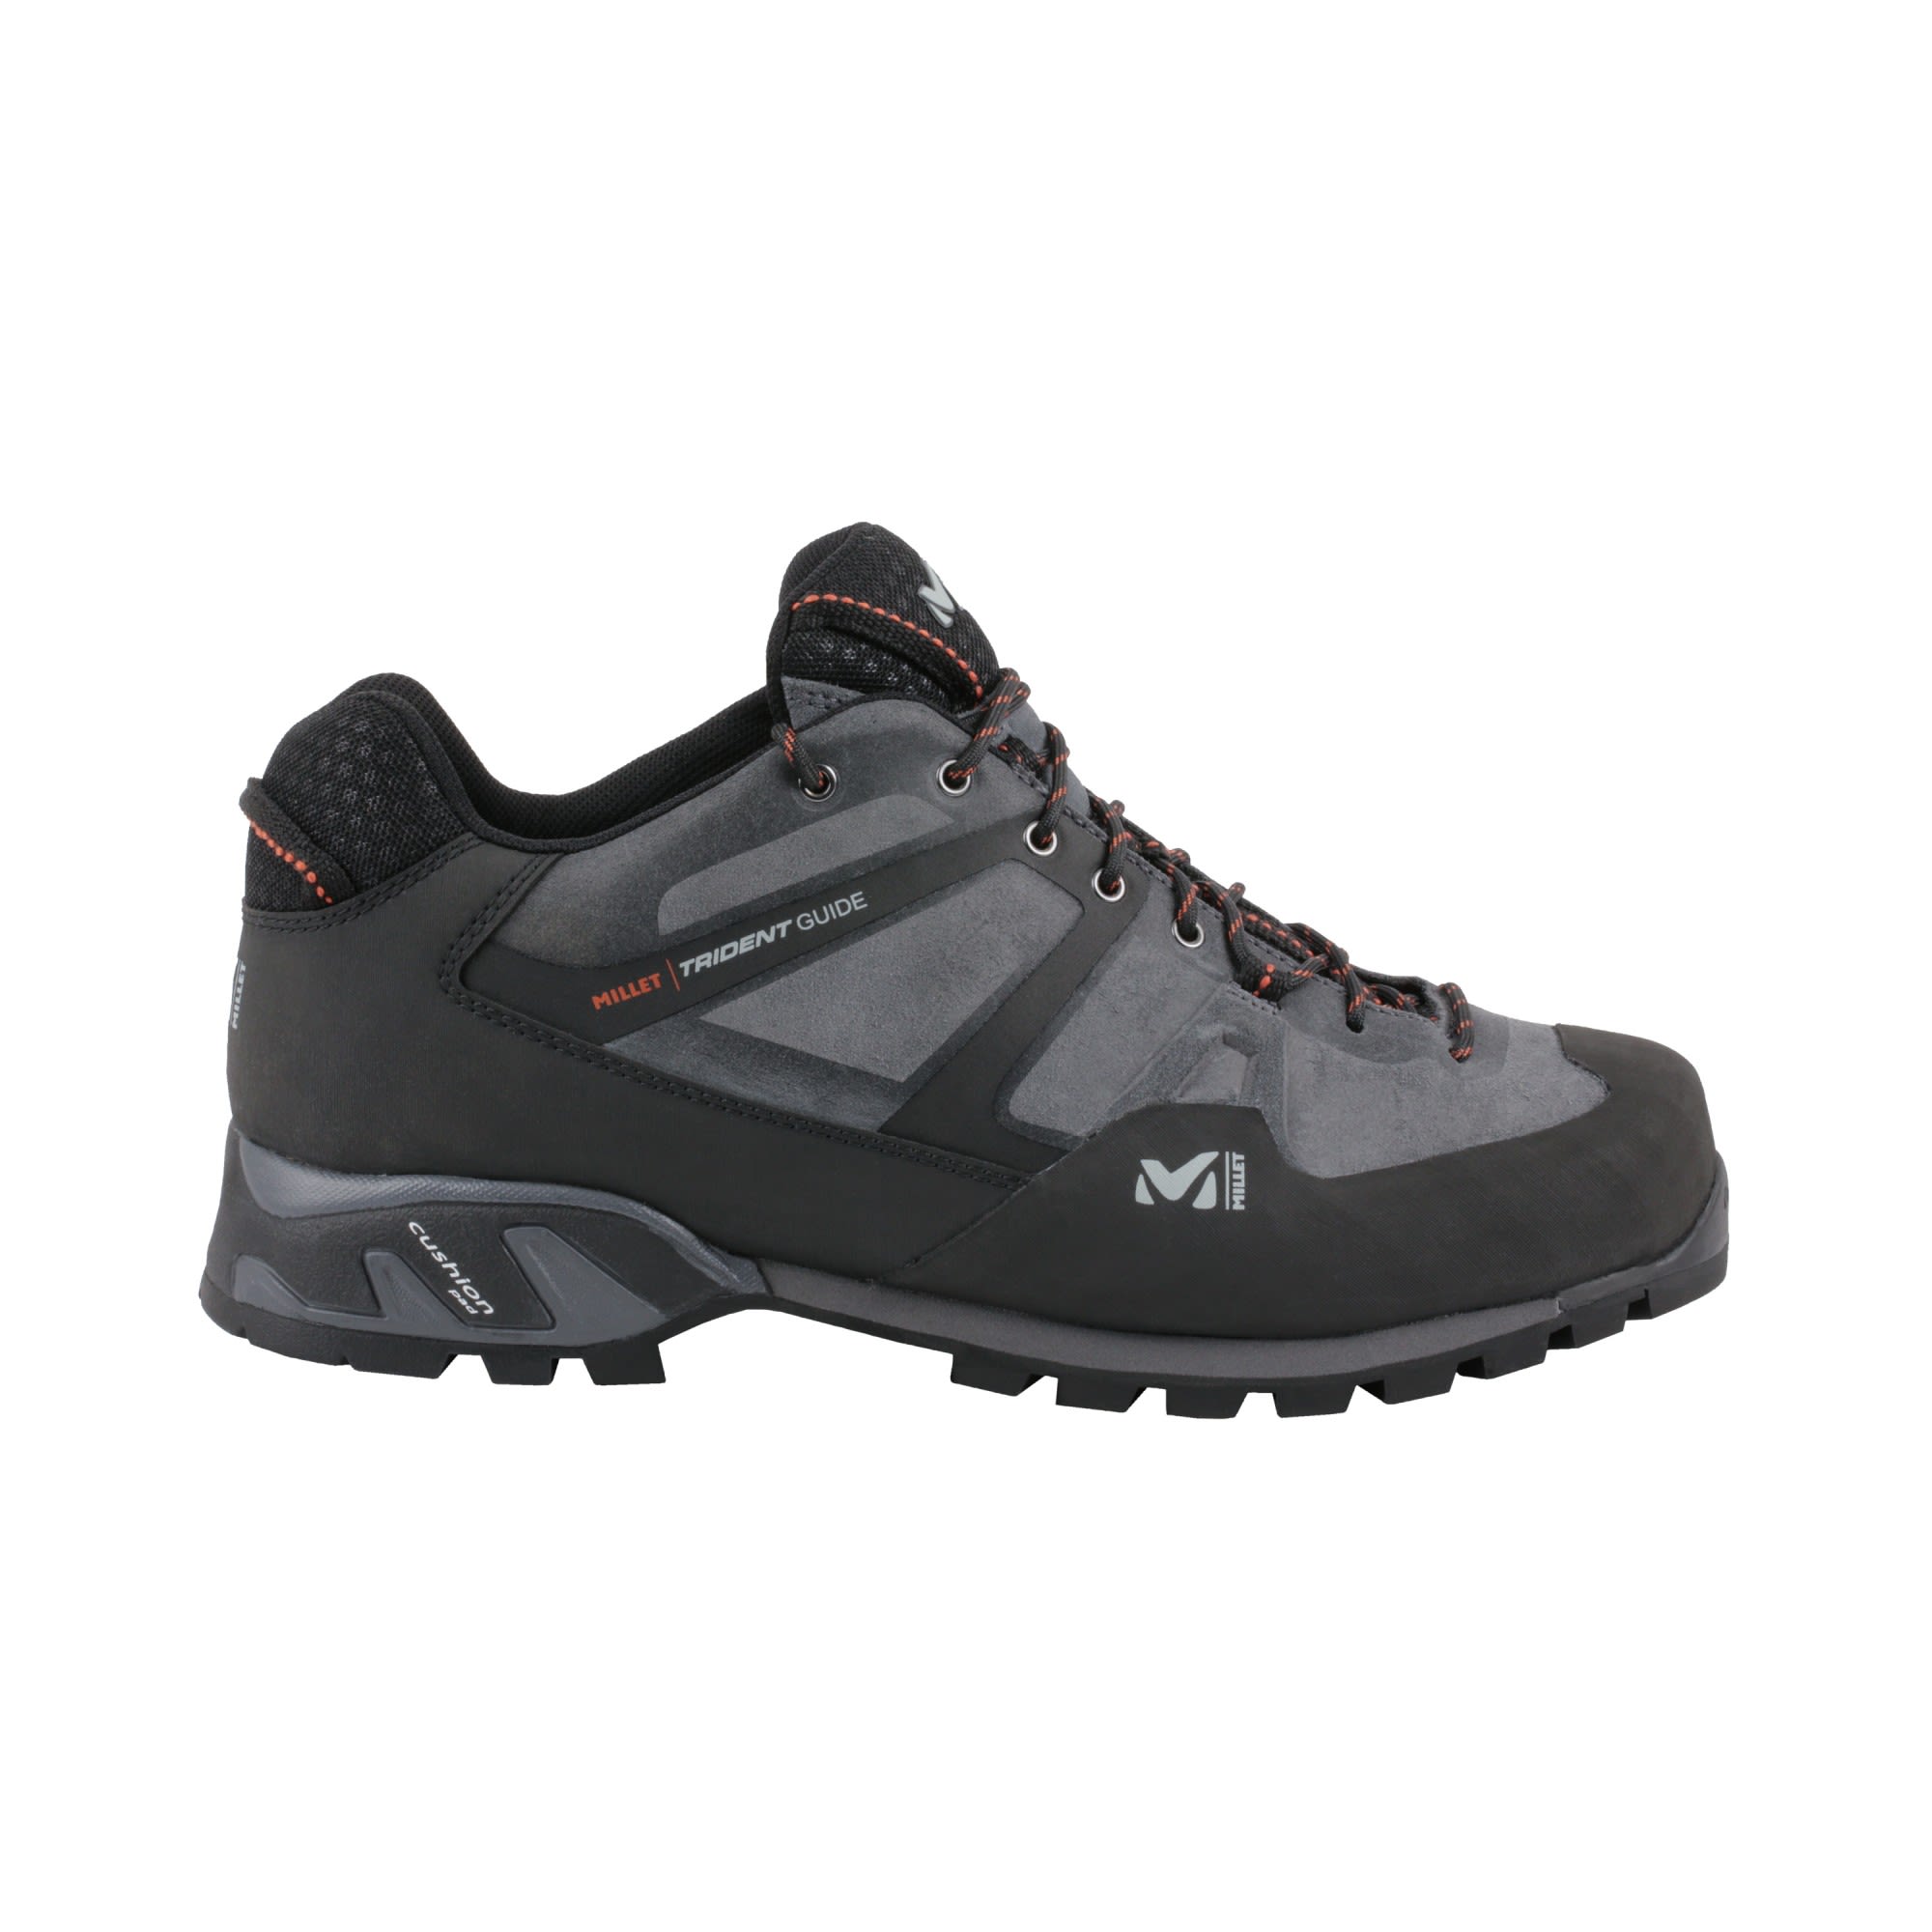 Millet Trident Guide Grau- Male Hiking- und Approach-Schuhe- Grsse EU 40 2-3 - Farbe Tarmac